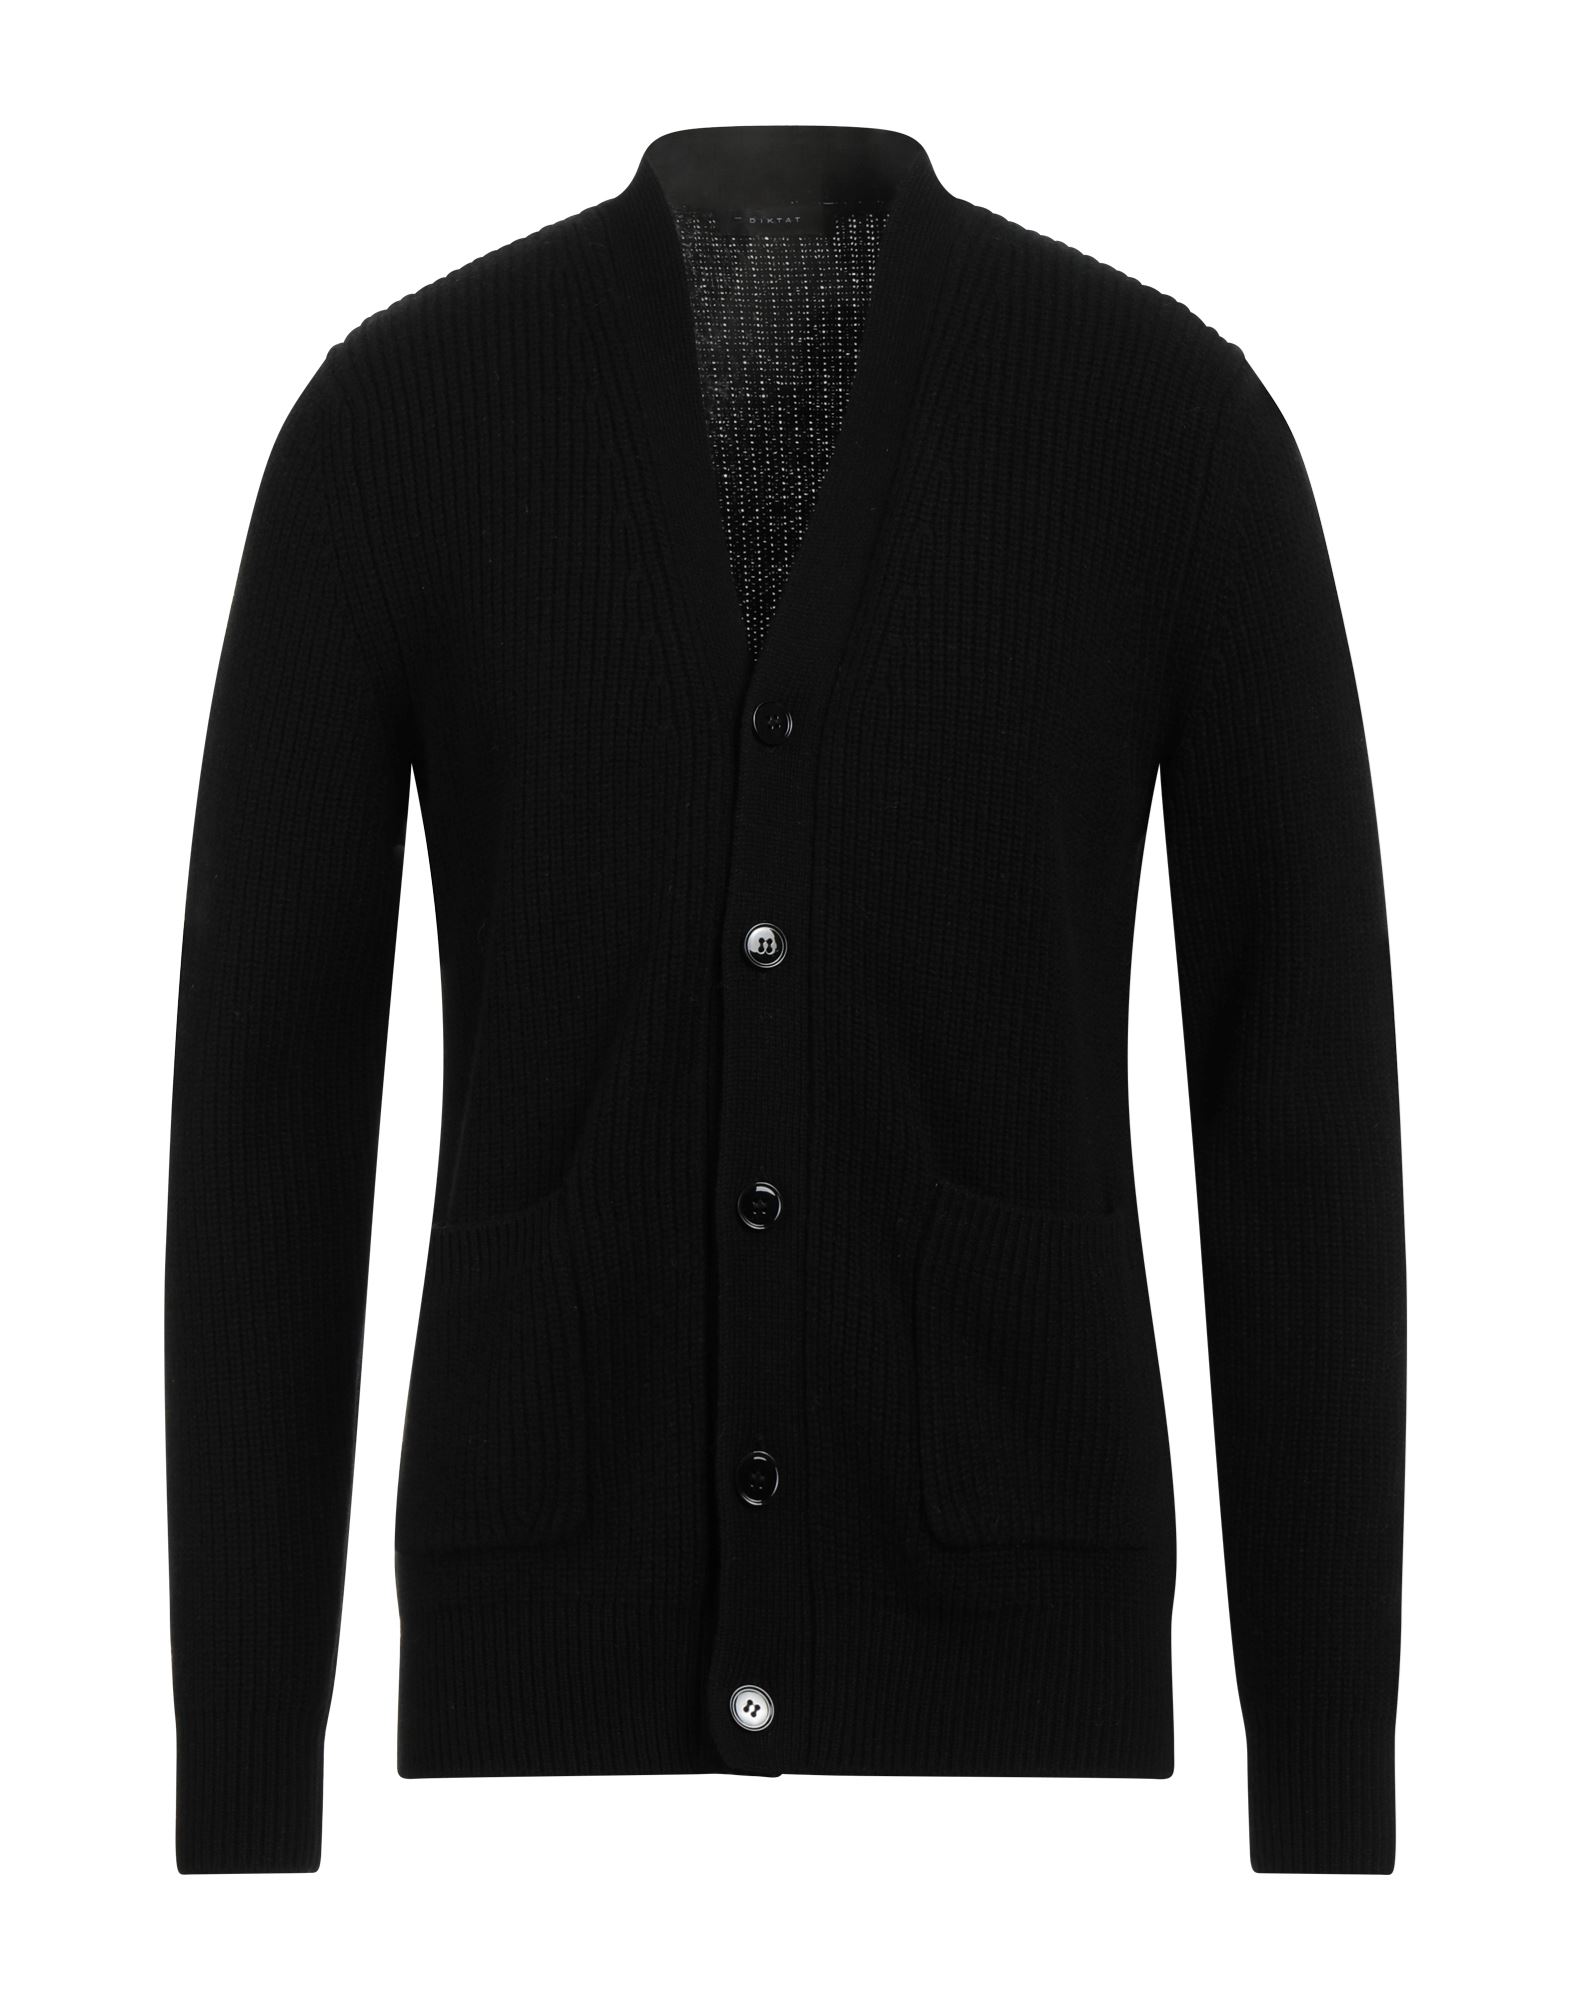 Shop Diktat Man Cardigan Black Size Xxl Merino Wool